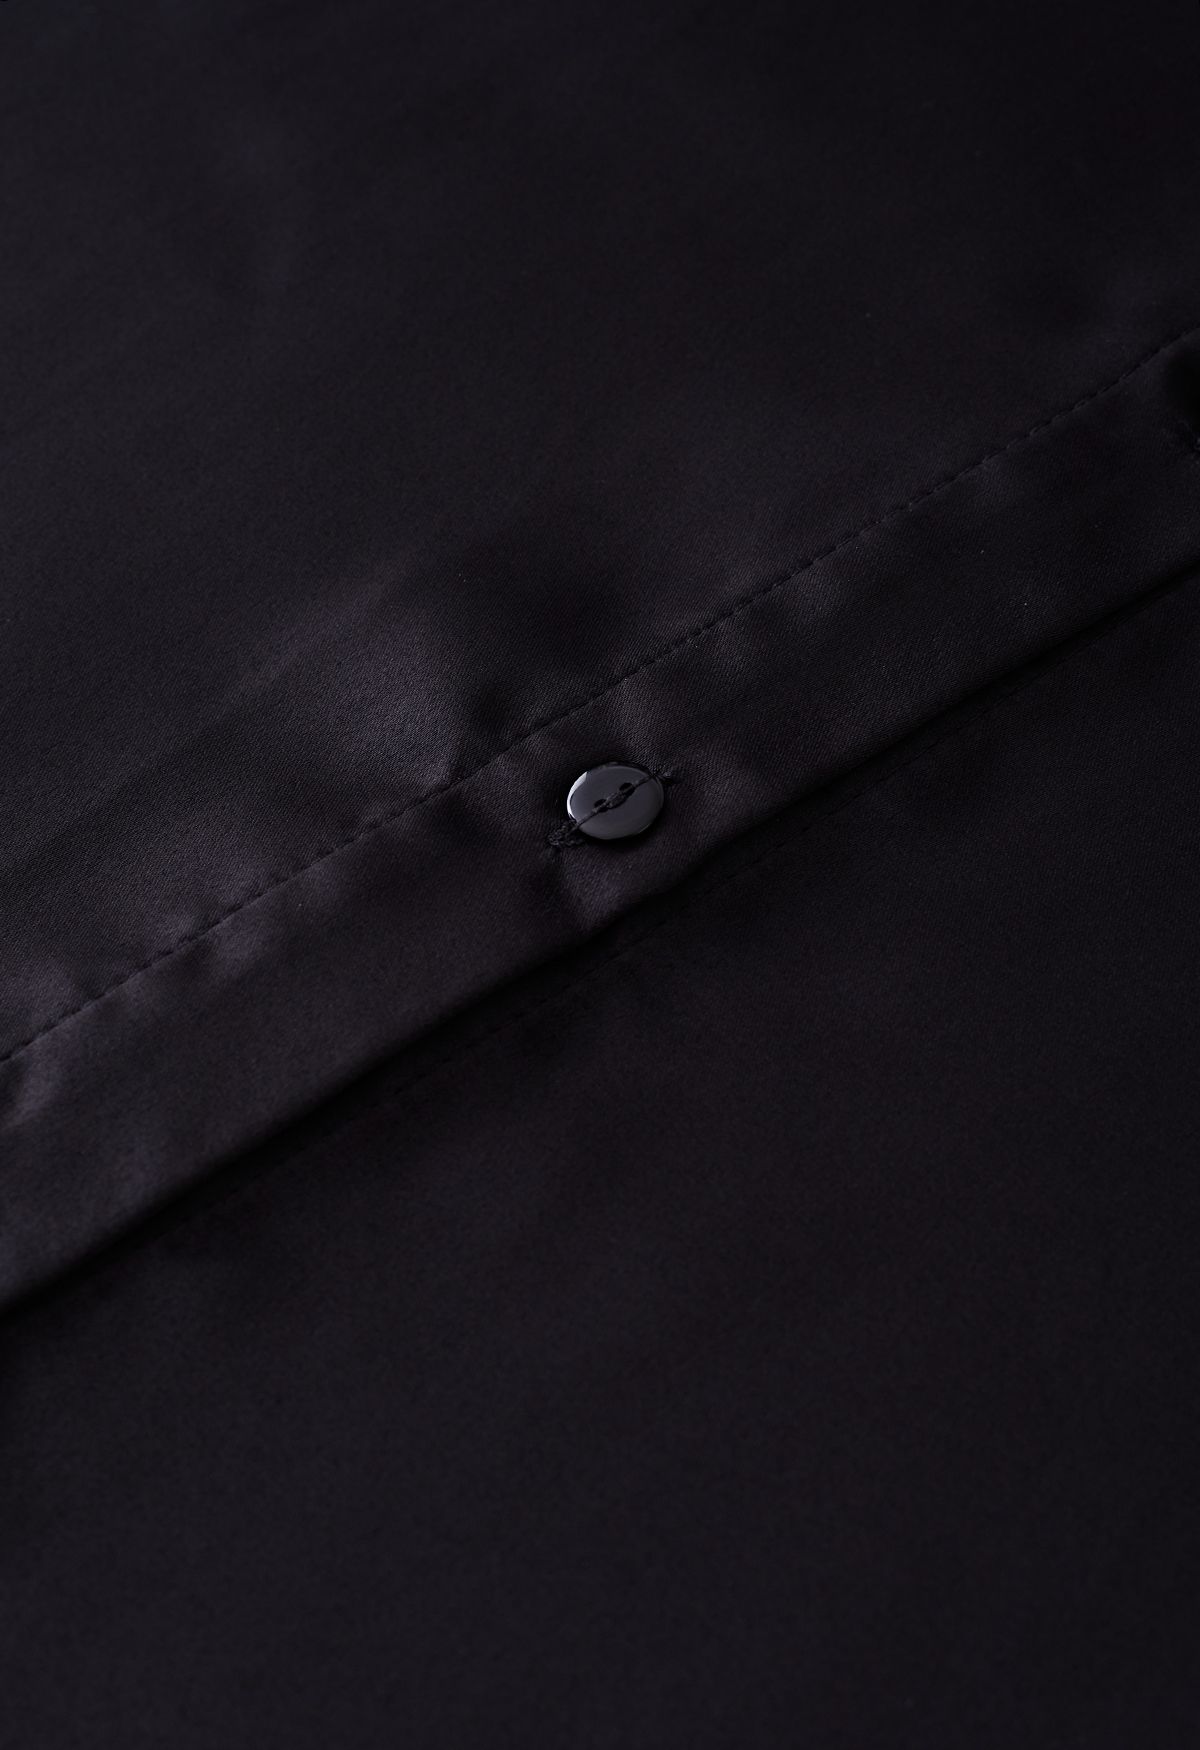 Feather Trim Cuffs Satin Shirt in Black